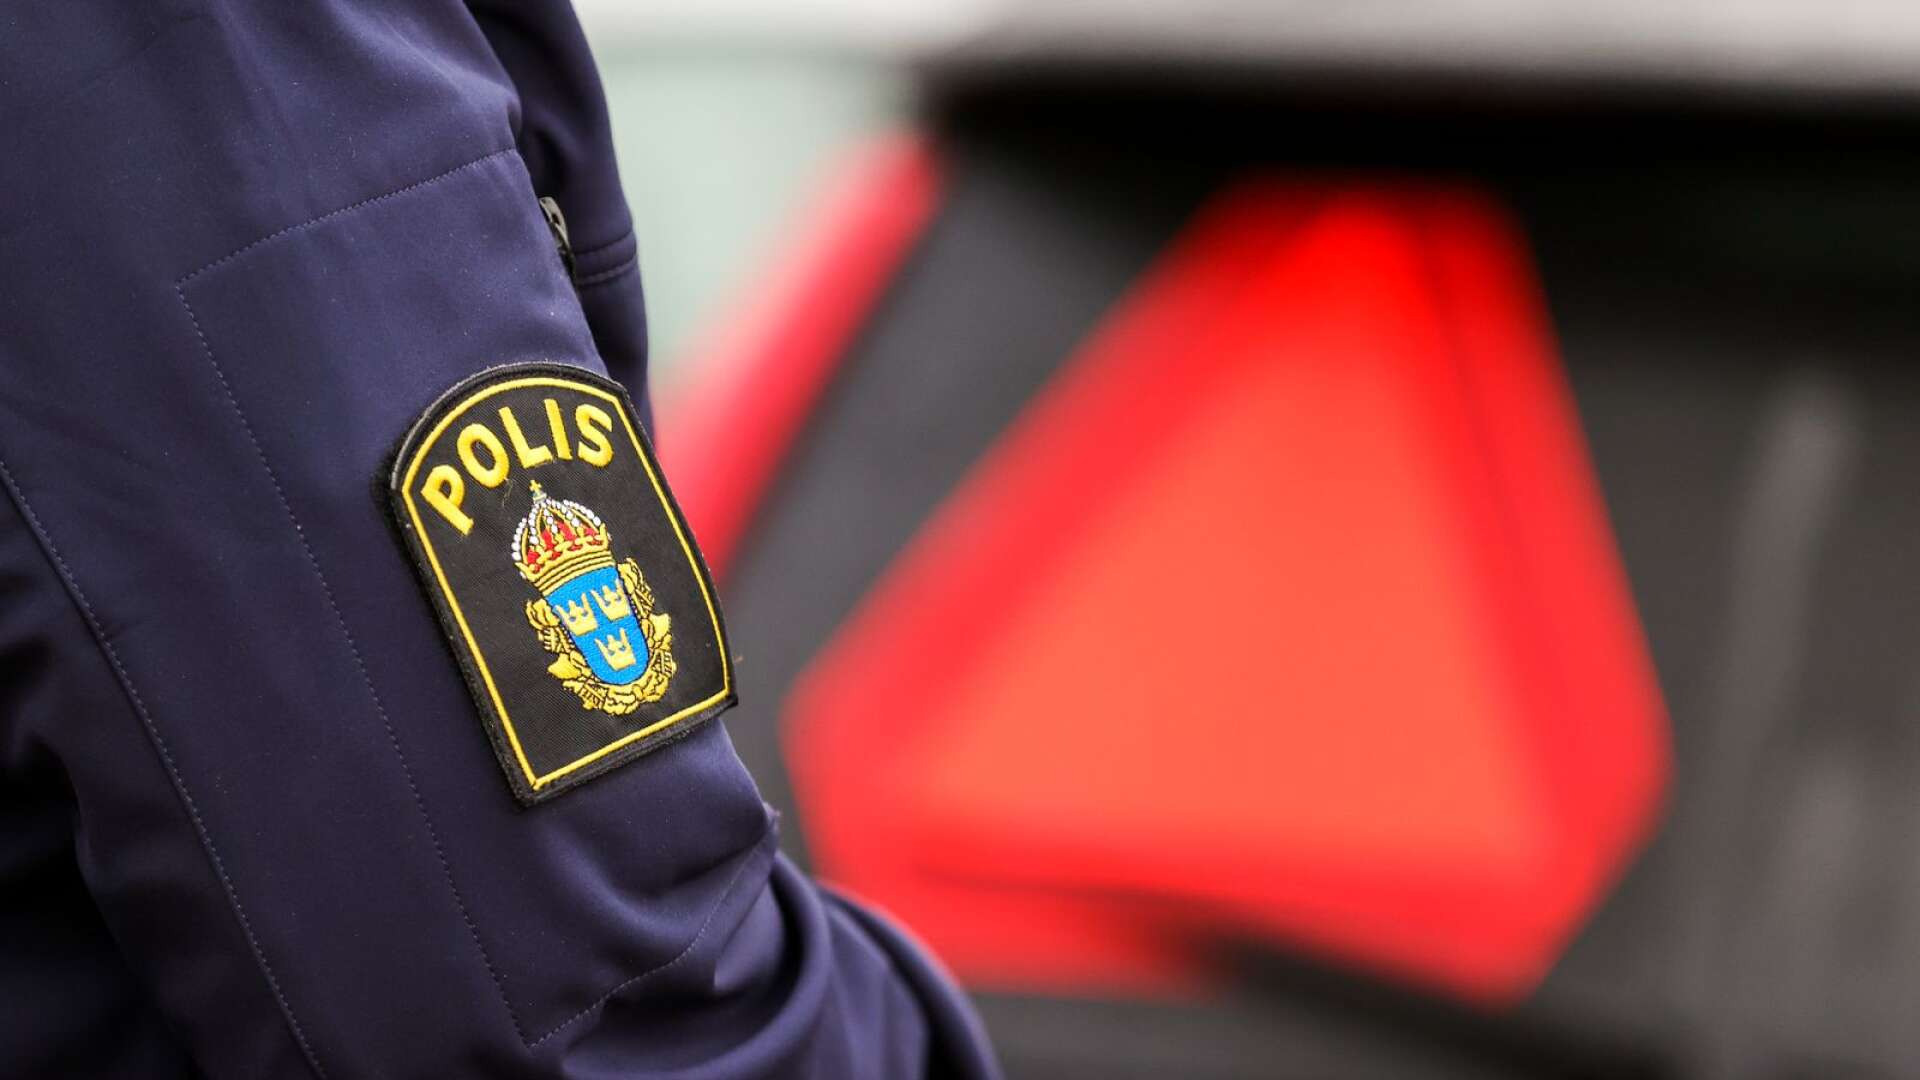 En A-traktorungdom från västra Värmland döms till dagsböter. Genrebild.